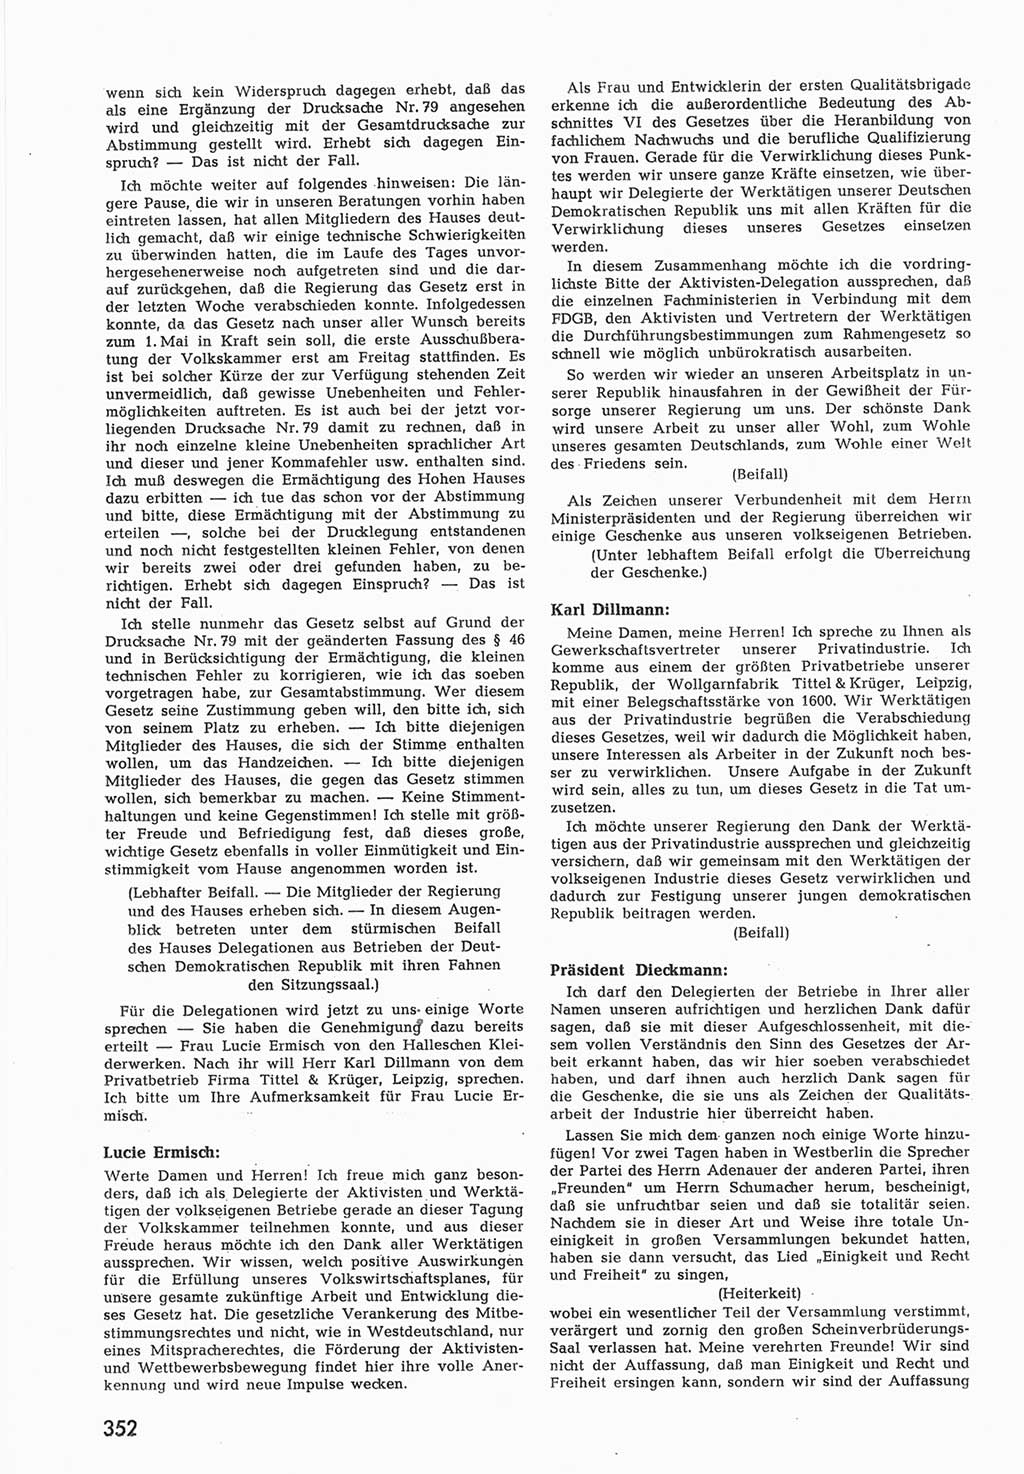 Provisorische Volkskammer (VK) der Deutschen Demokratischen Republik (DDR) 1949-1950, Dokument 366 (Prov. VK DDR 1949-1950, Dok. 366)